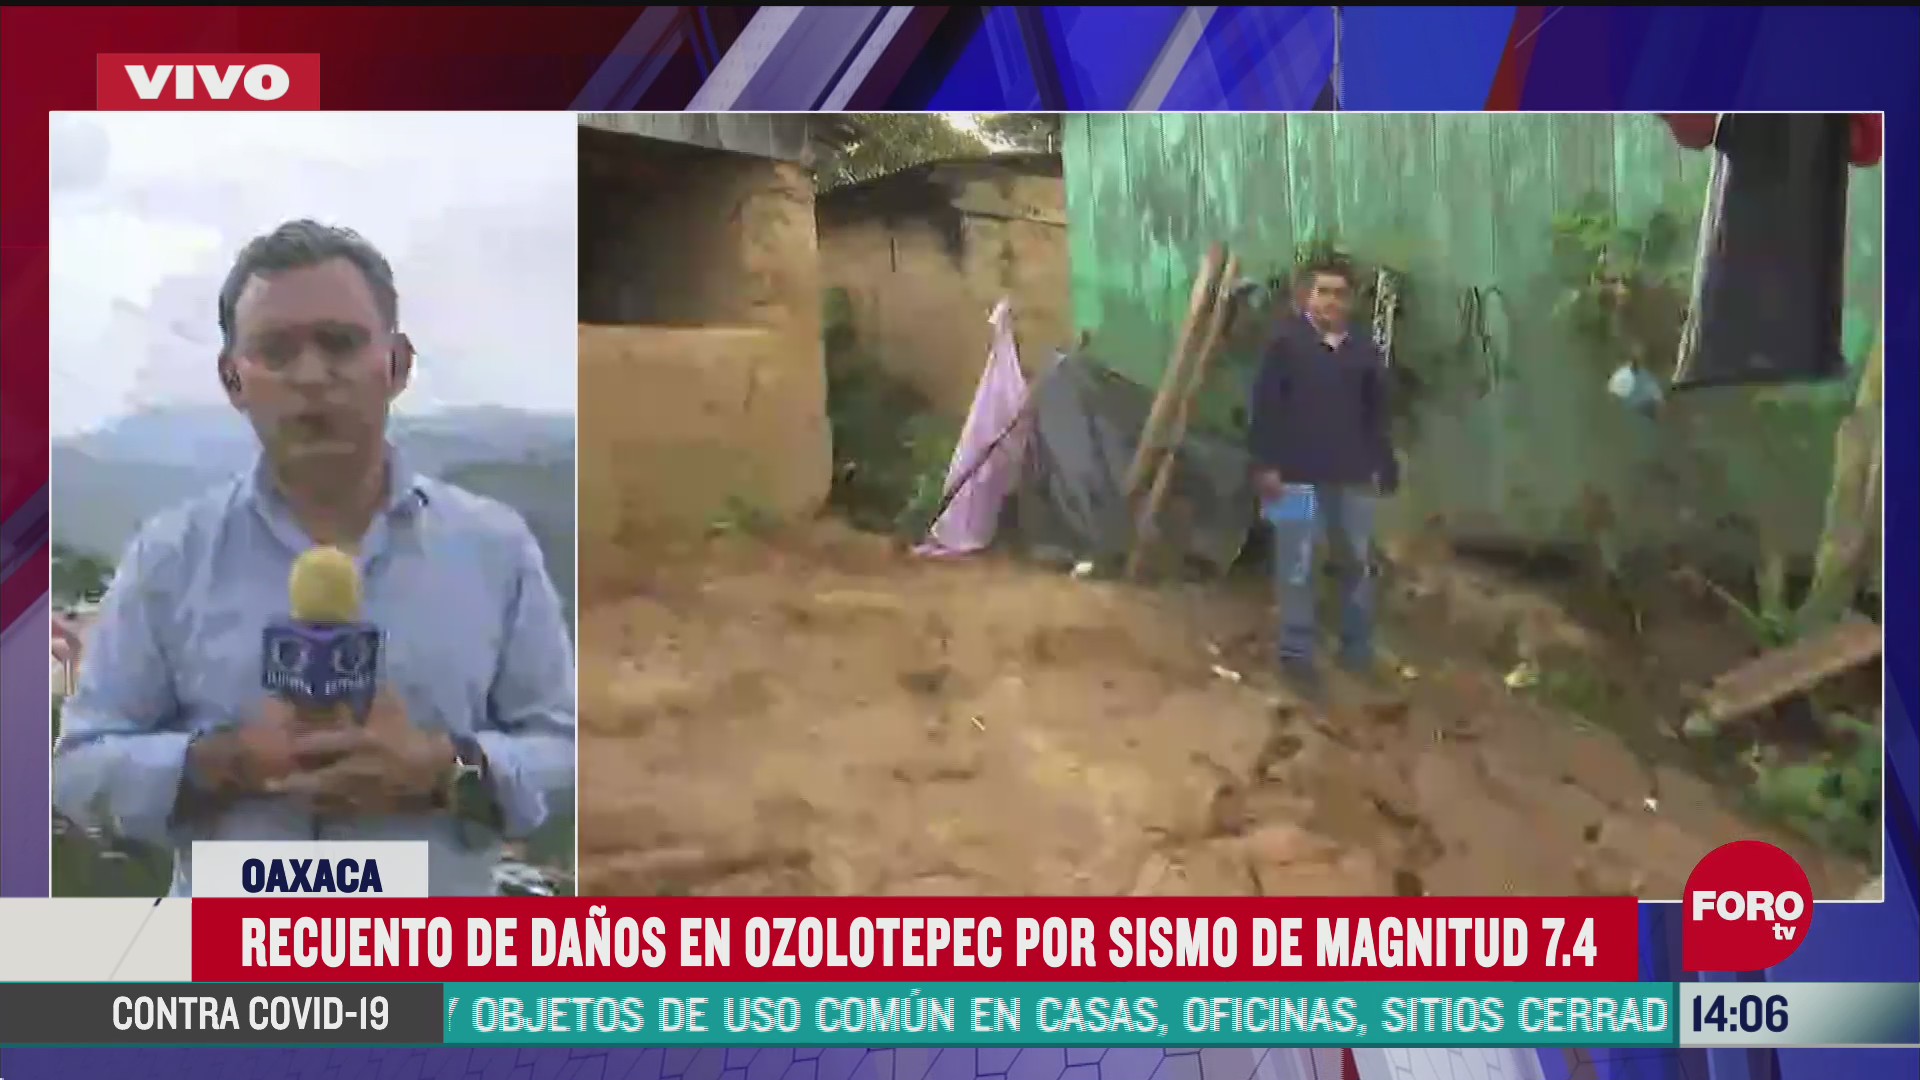 ozolotepec uno de los municipios mas afectados por el sismo en oaxaca